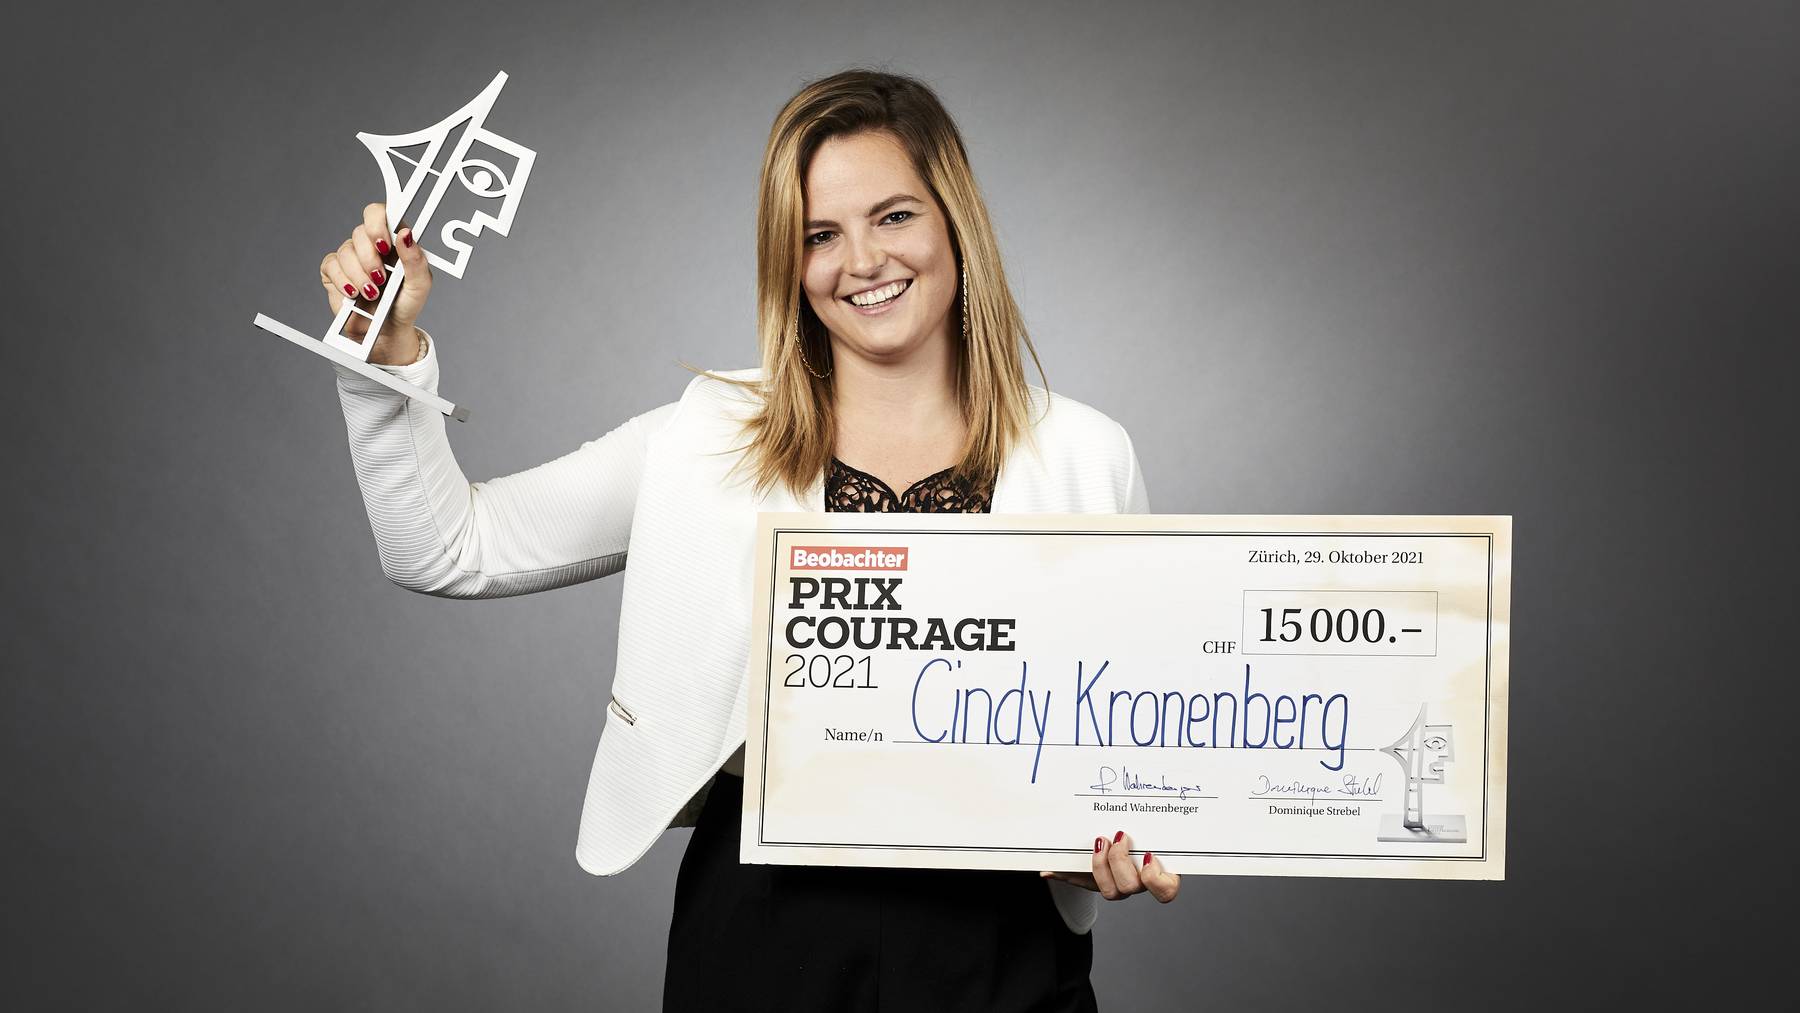 Cindy Kronenberg, Sursee / Prix Courage